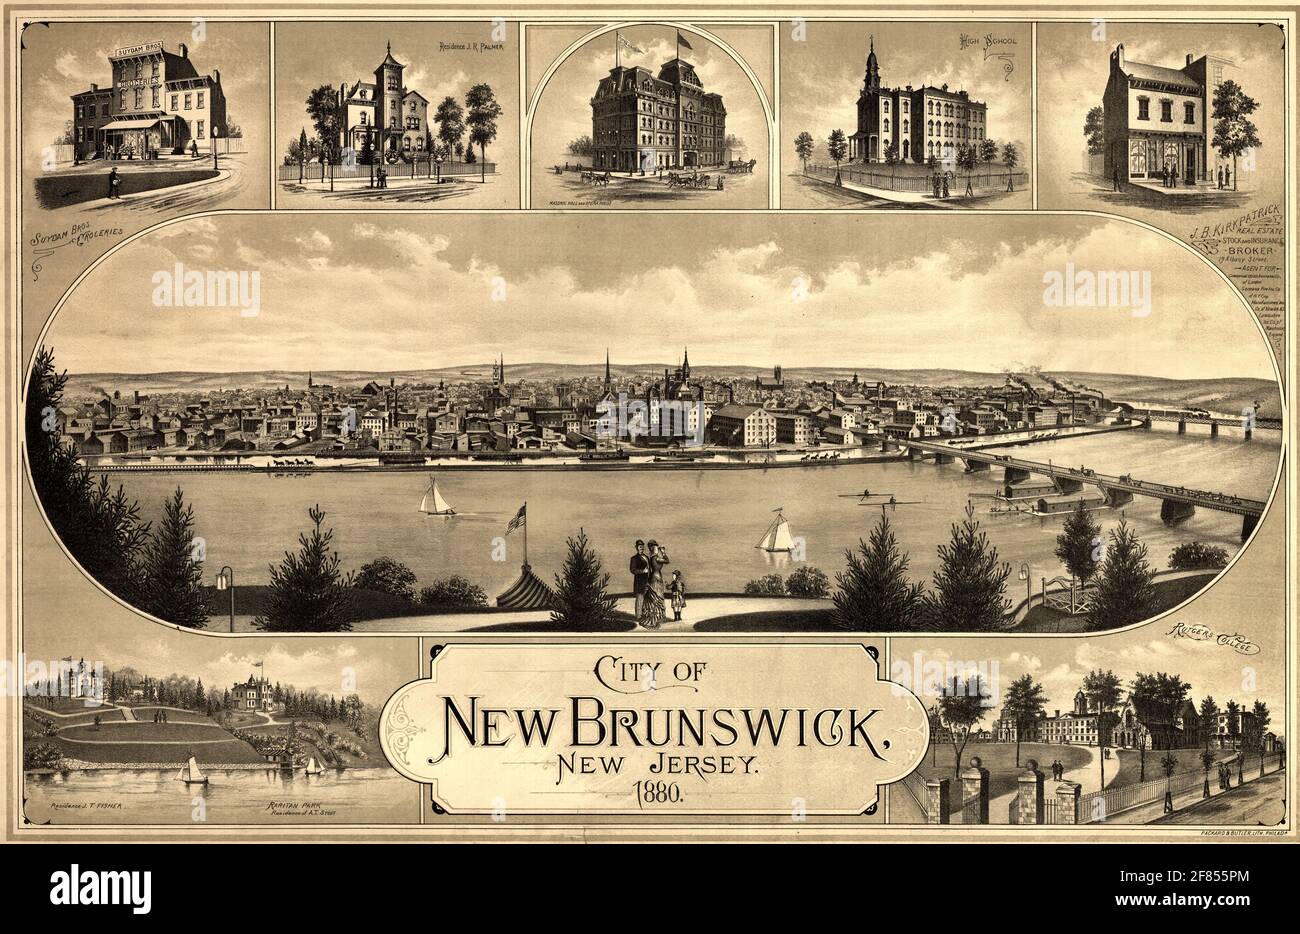 Aus der Vogelperspektive betrachtet, zeigt New Brunswick, New Jersey, den Raritan River im Vordergrund; Vignetten von prominenten Gebäuden, wie dem Rutgers College, bilden den oberen und unteren Rand 1880 Stockfoto